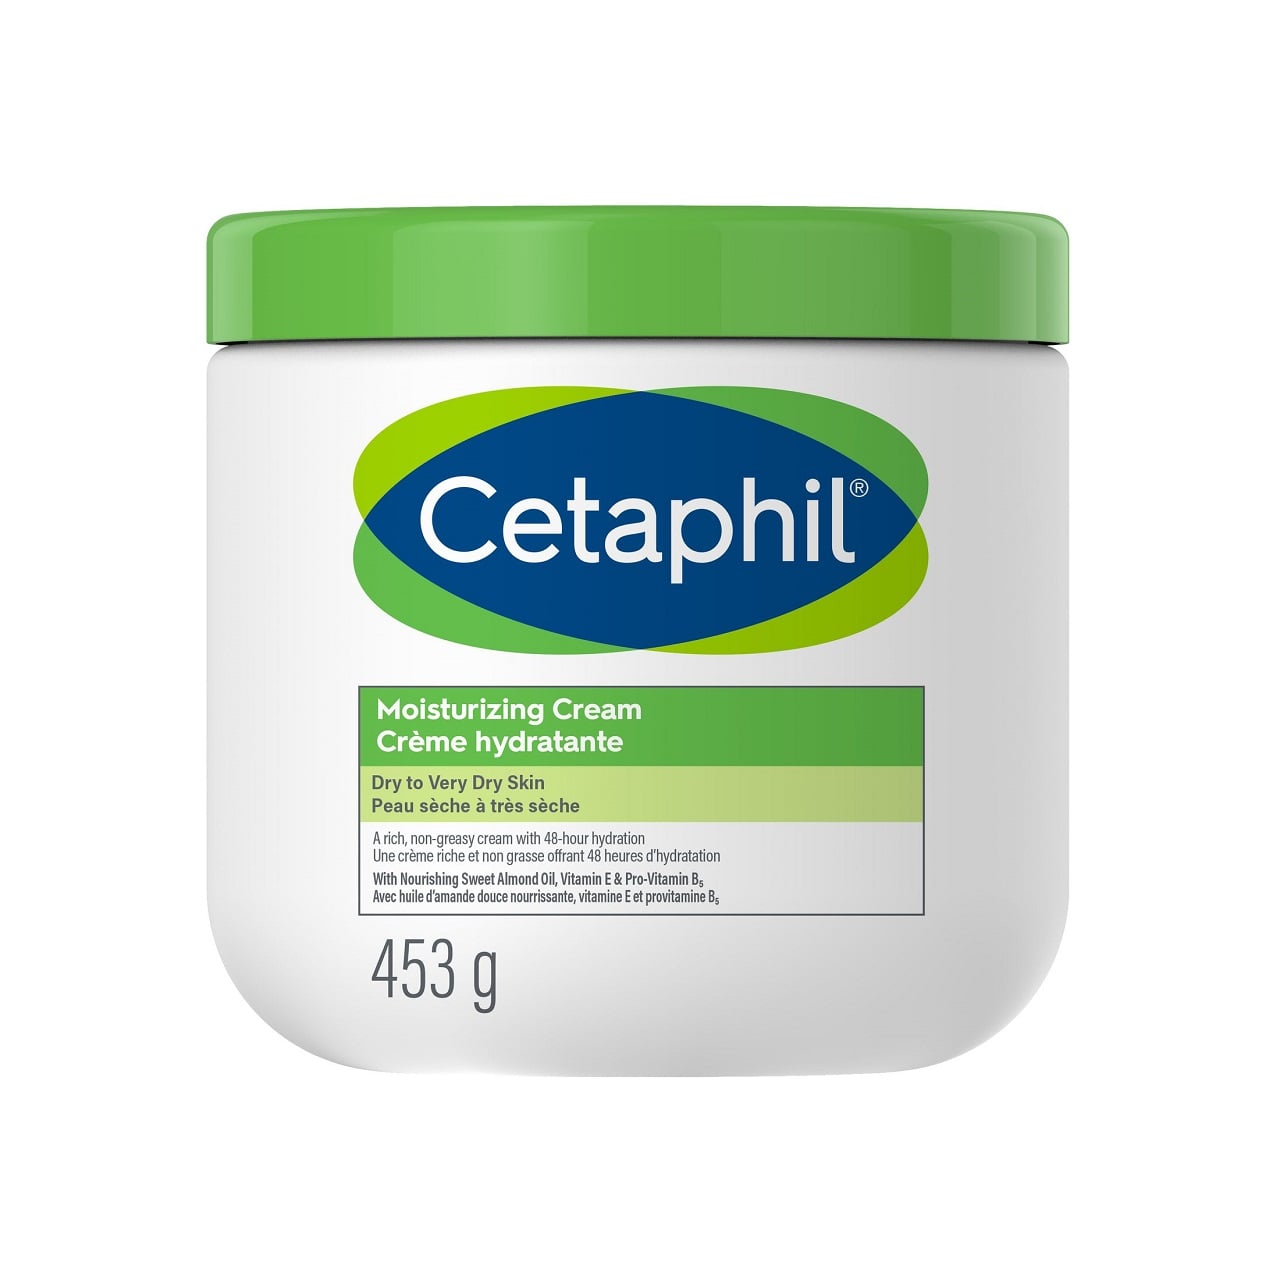 Product label for Cetaphil Moisturing Cream (453g)